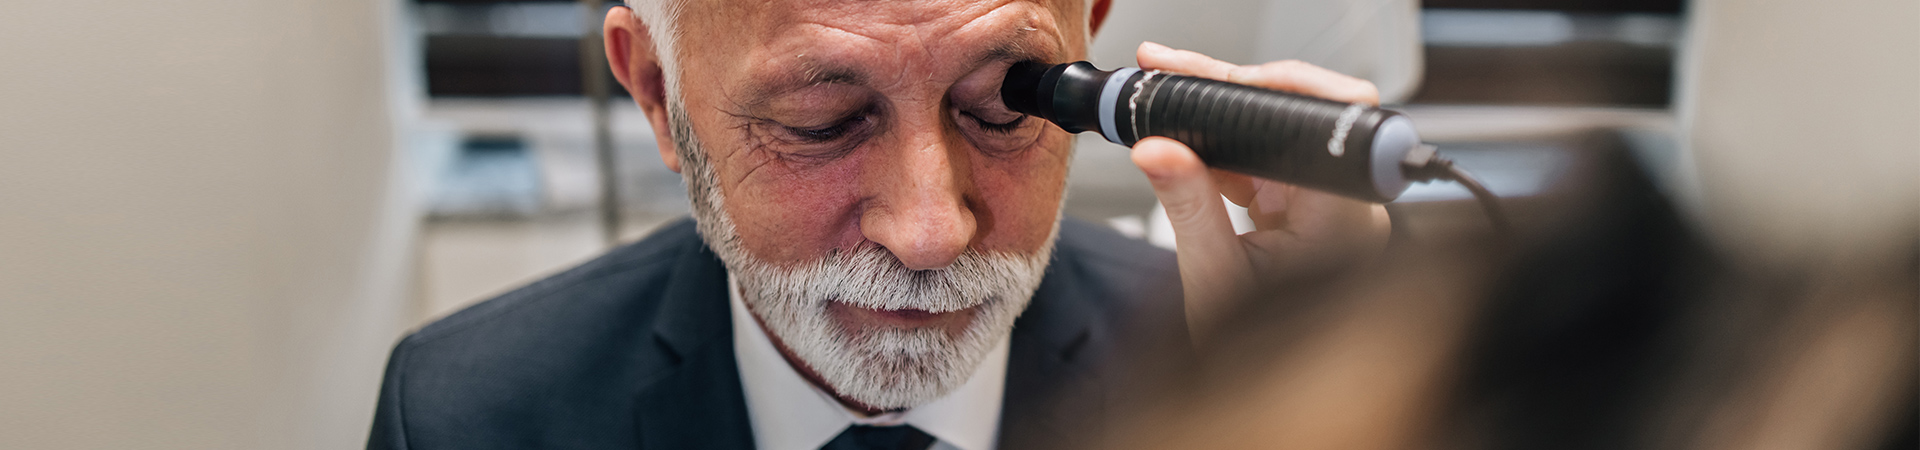 ترقية برمجيات التصوير الميكانيكي الحيوي لطب العيون